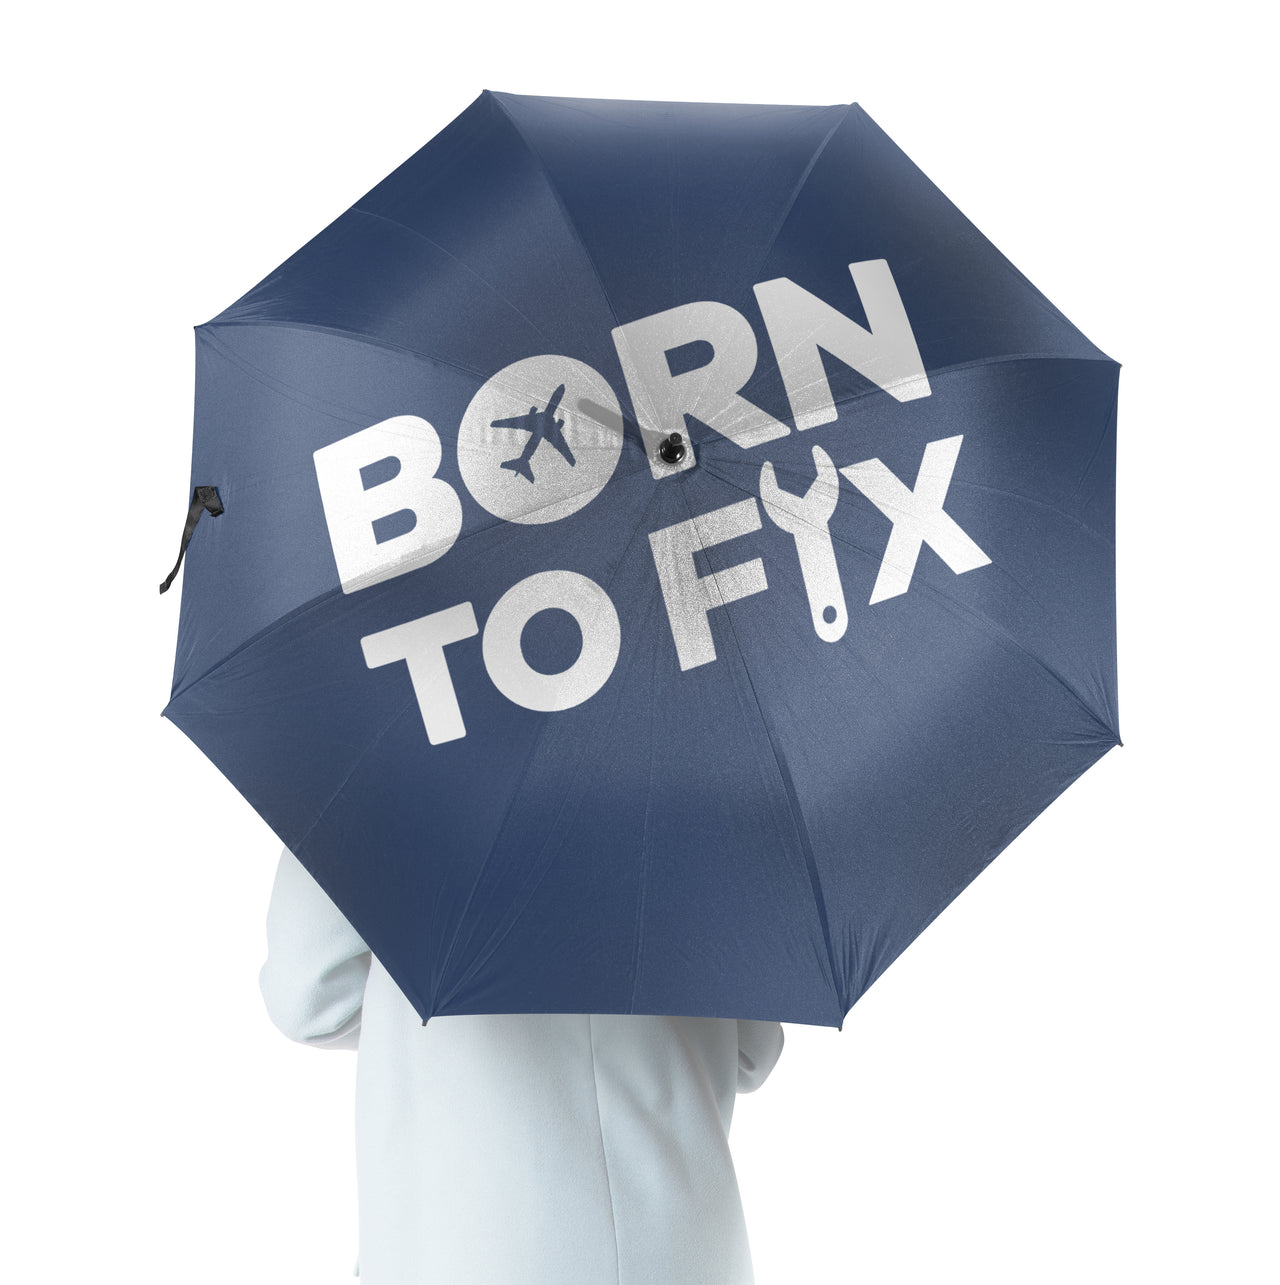 Born To Fix Airplanes Designed Umbrella